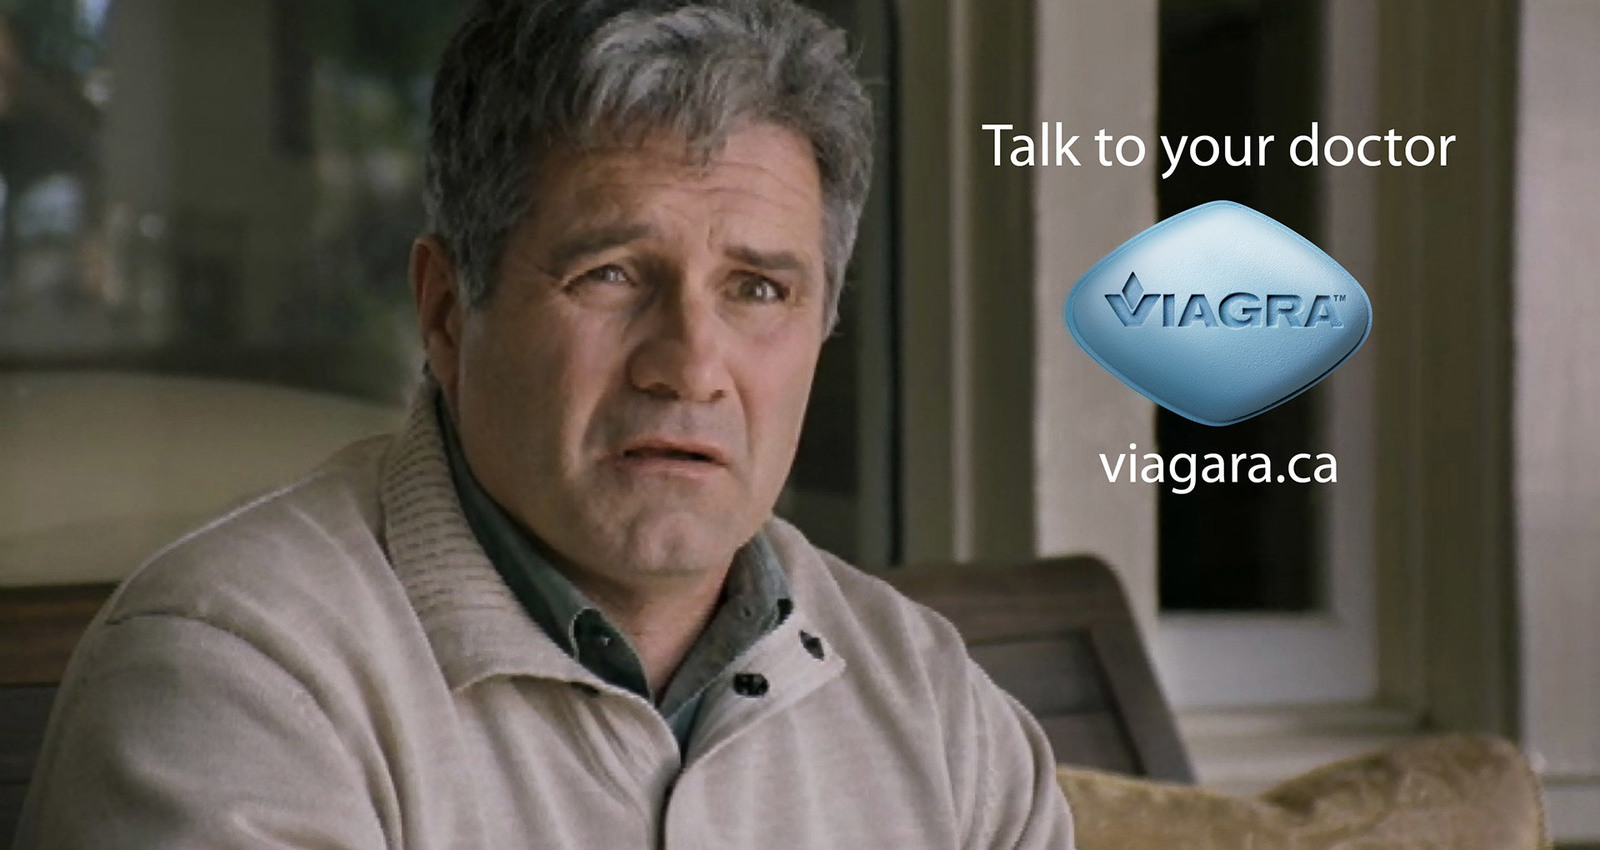 Viagra Confessions Campaign